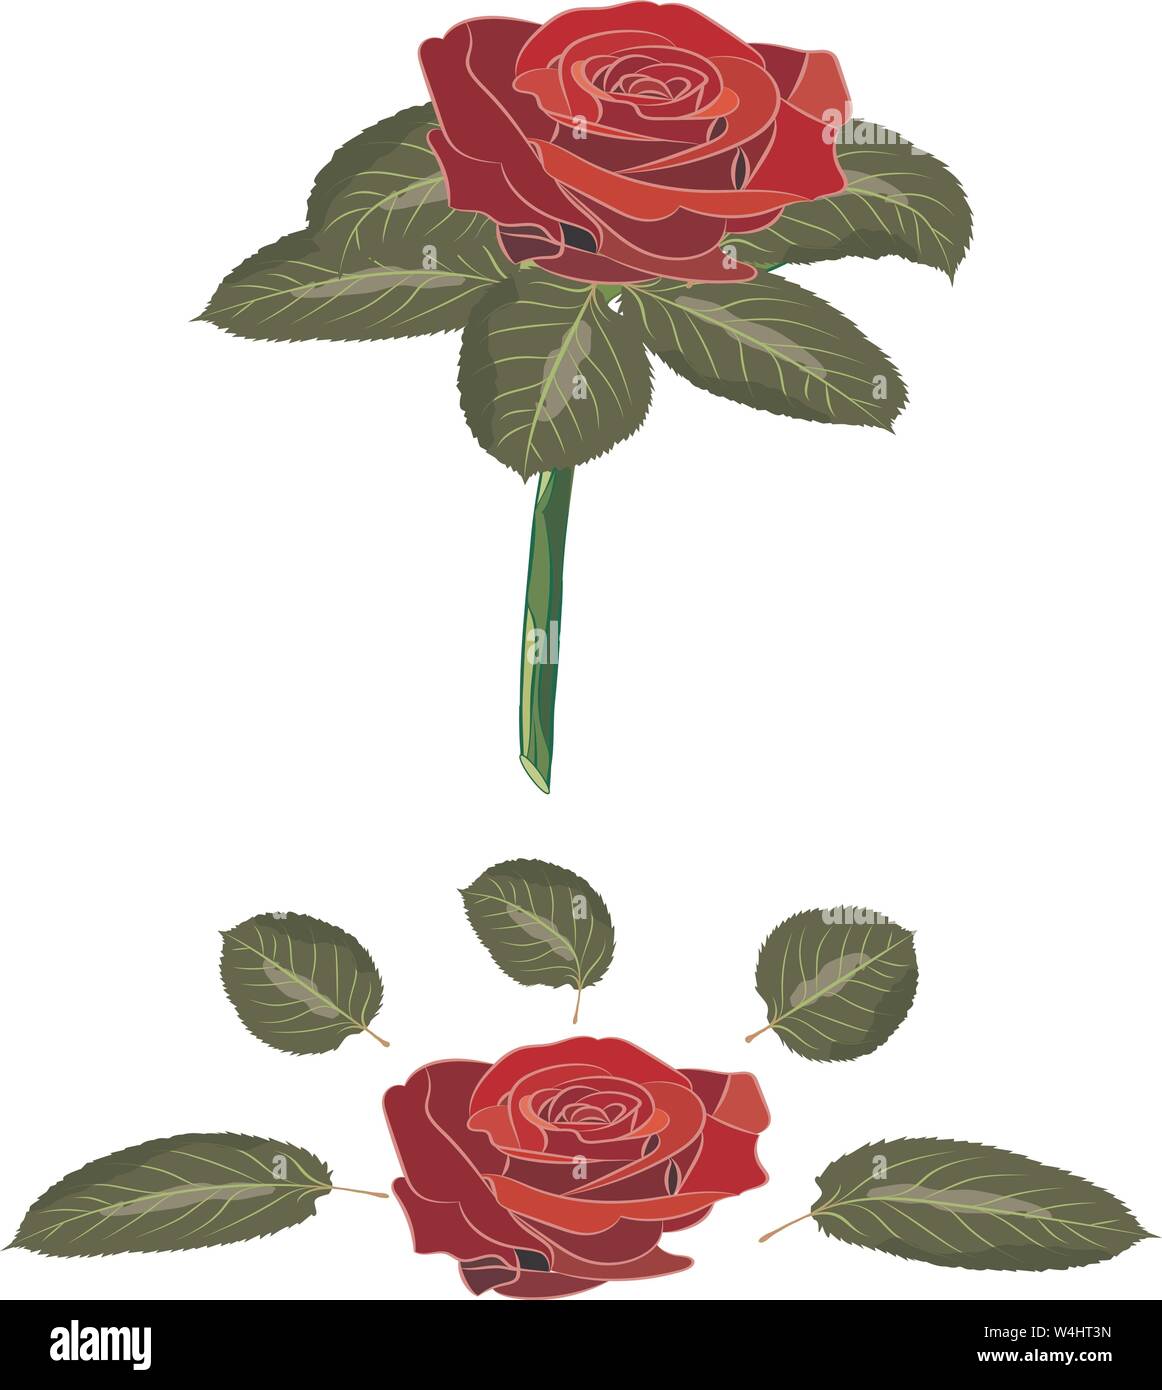 Blumen Rose, Scarlet und roten Blüten, grüne Blätter mit Stammzellen. Auf weissem Hintergrund. Erweiterte Blätter und die Knospe. Vector Illustration. Stock Vektor